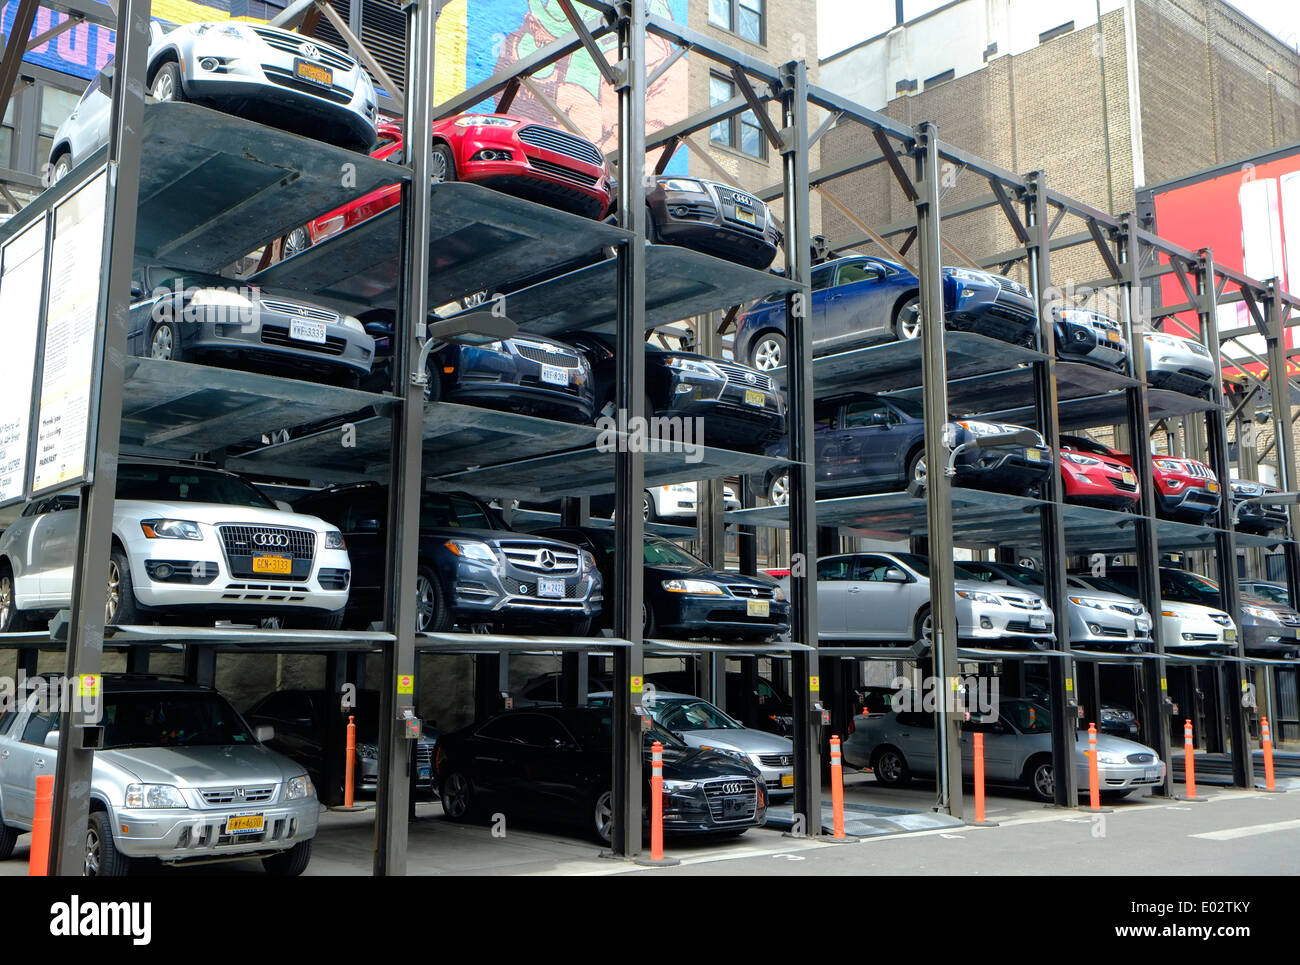 Soluciones de aparcamiento interior de la ciudad, Midtown, Nueva York, EE.UU. Foto de stock